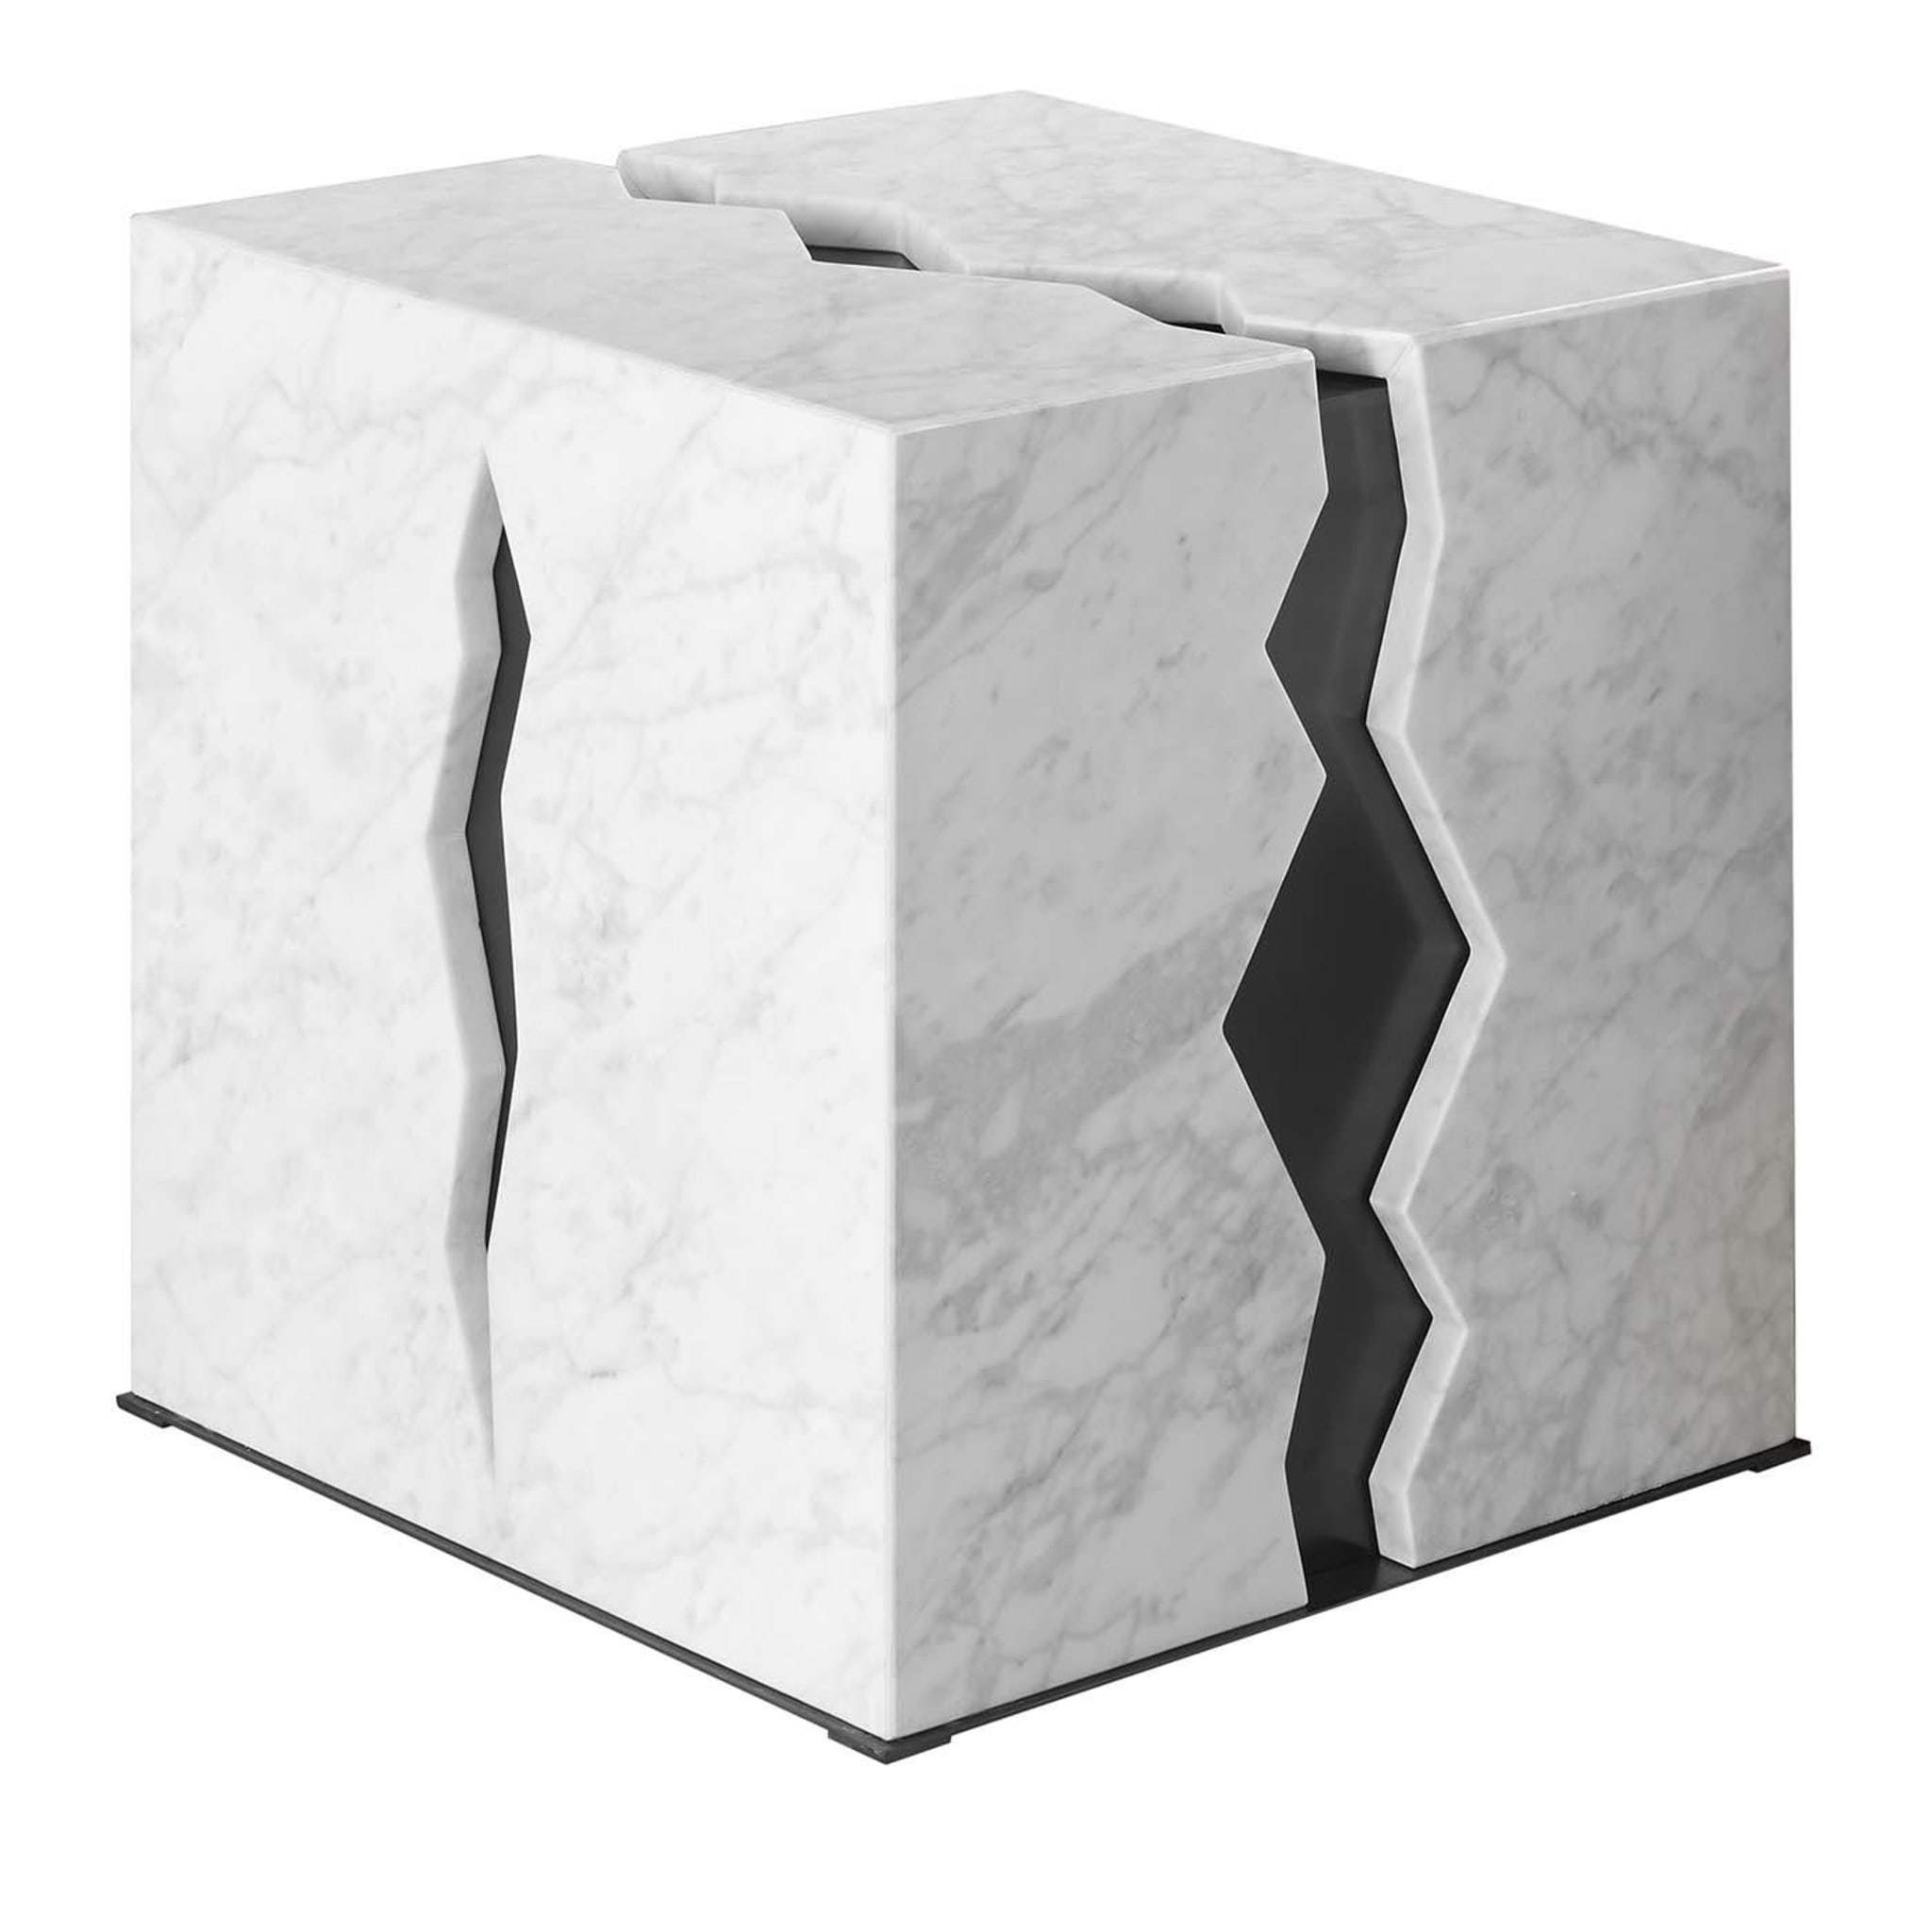 Tavolino Crepa in marmo bianco di Carrara - Vista principale